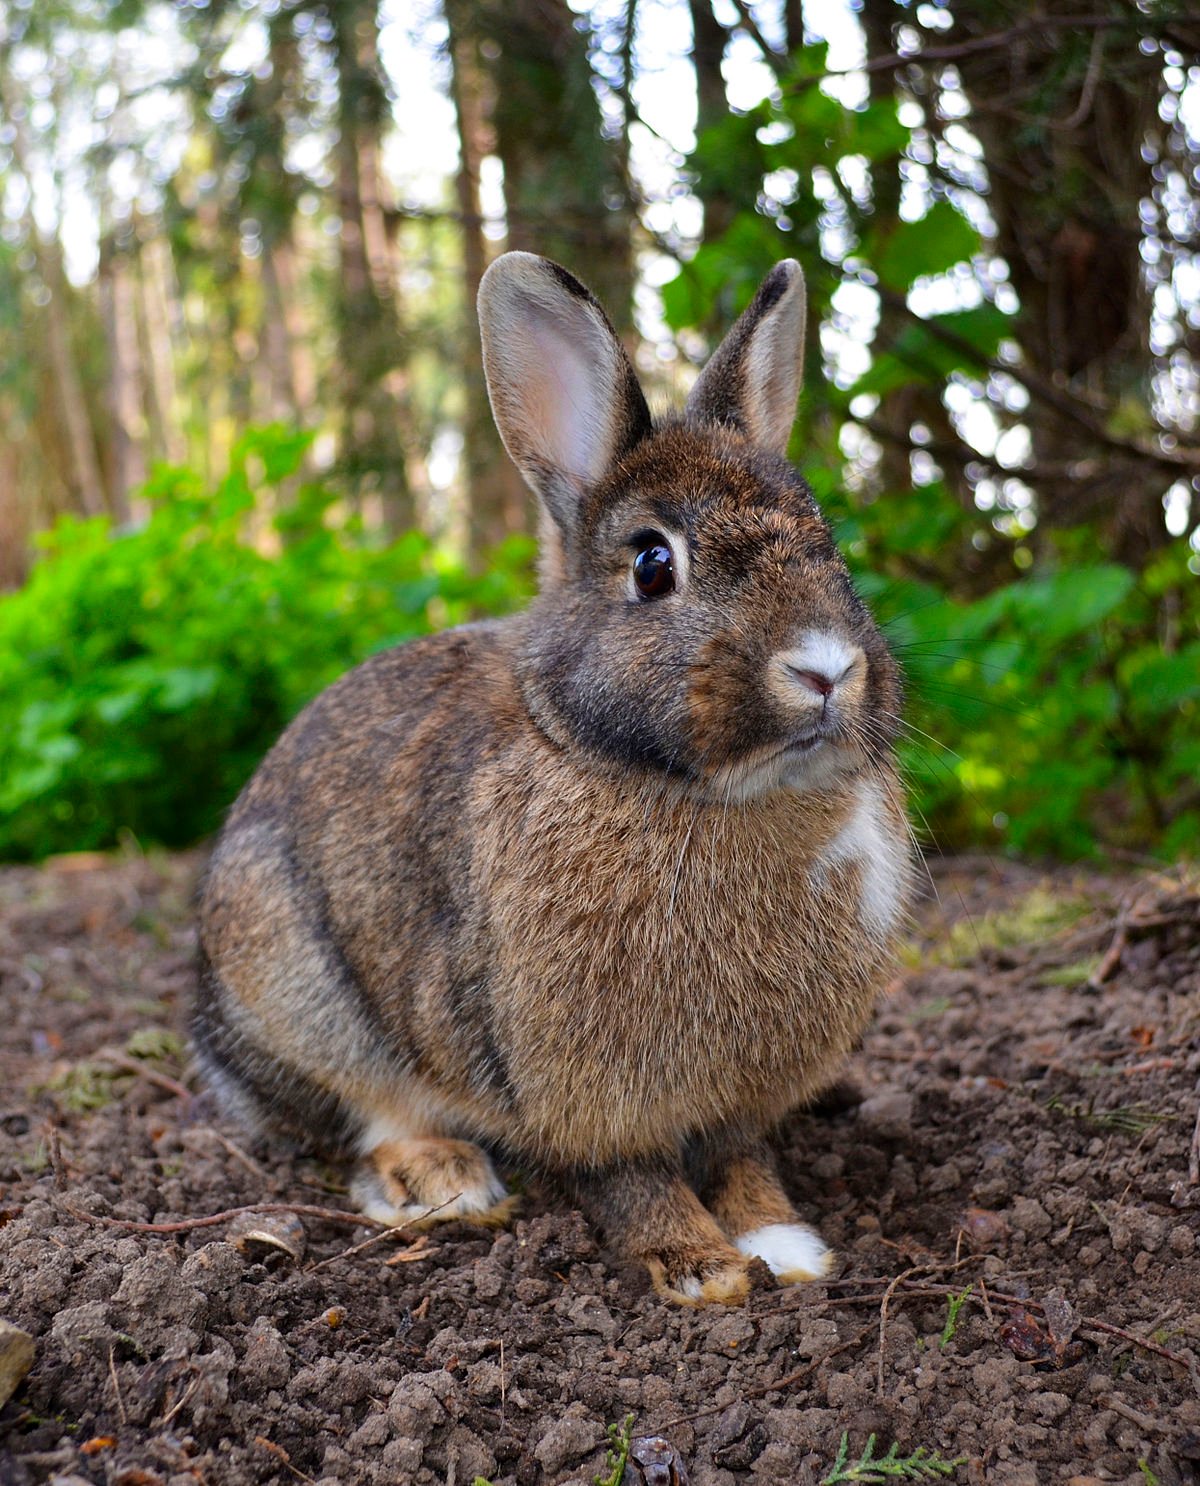 عکس خوشگل از نمای روبه روی خرگوش وحشی در جنگل و طبیعت 